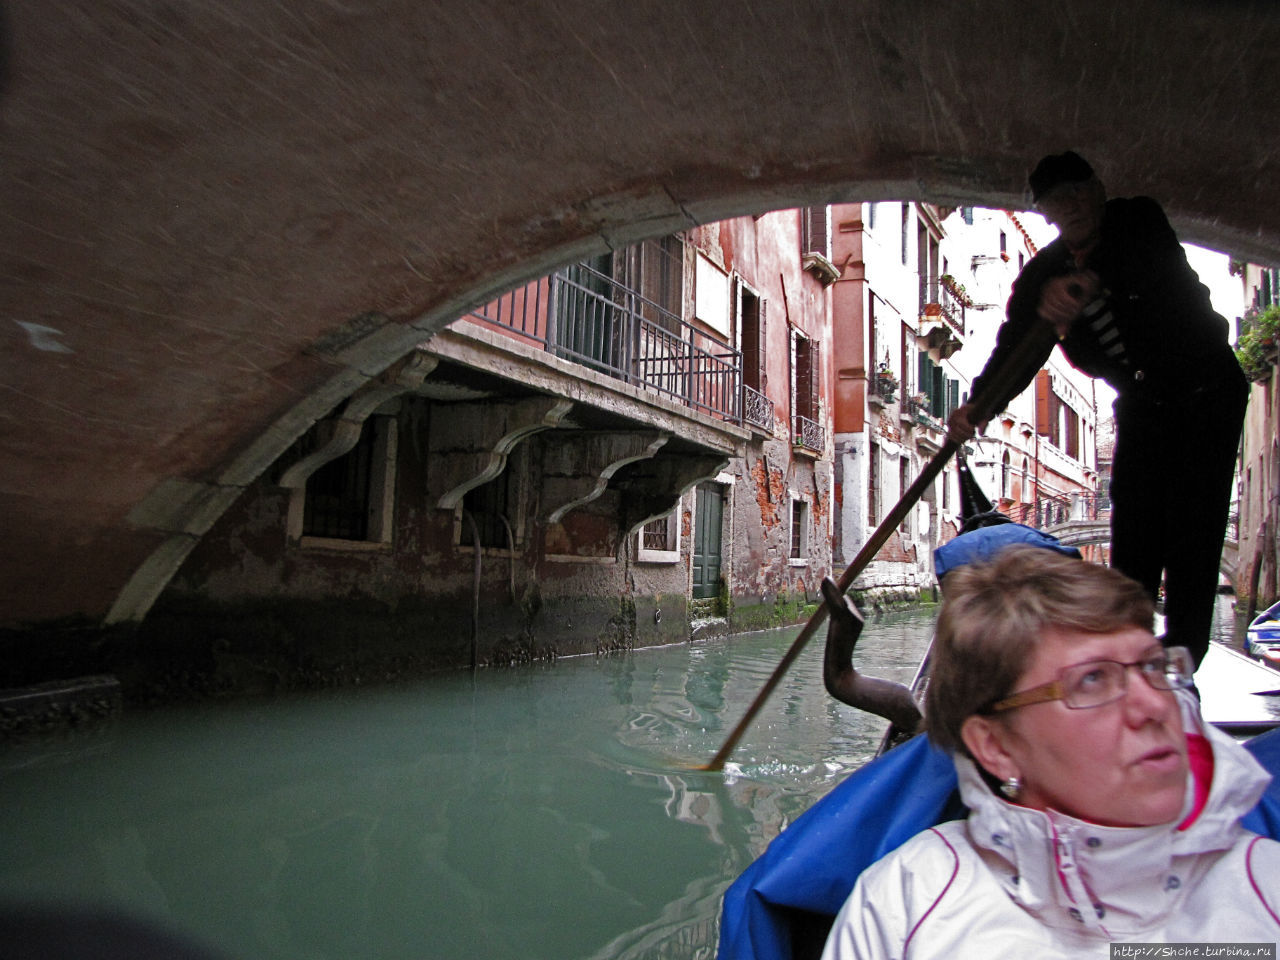 Канале Гранде Венеция, Италия